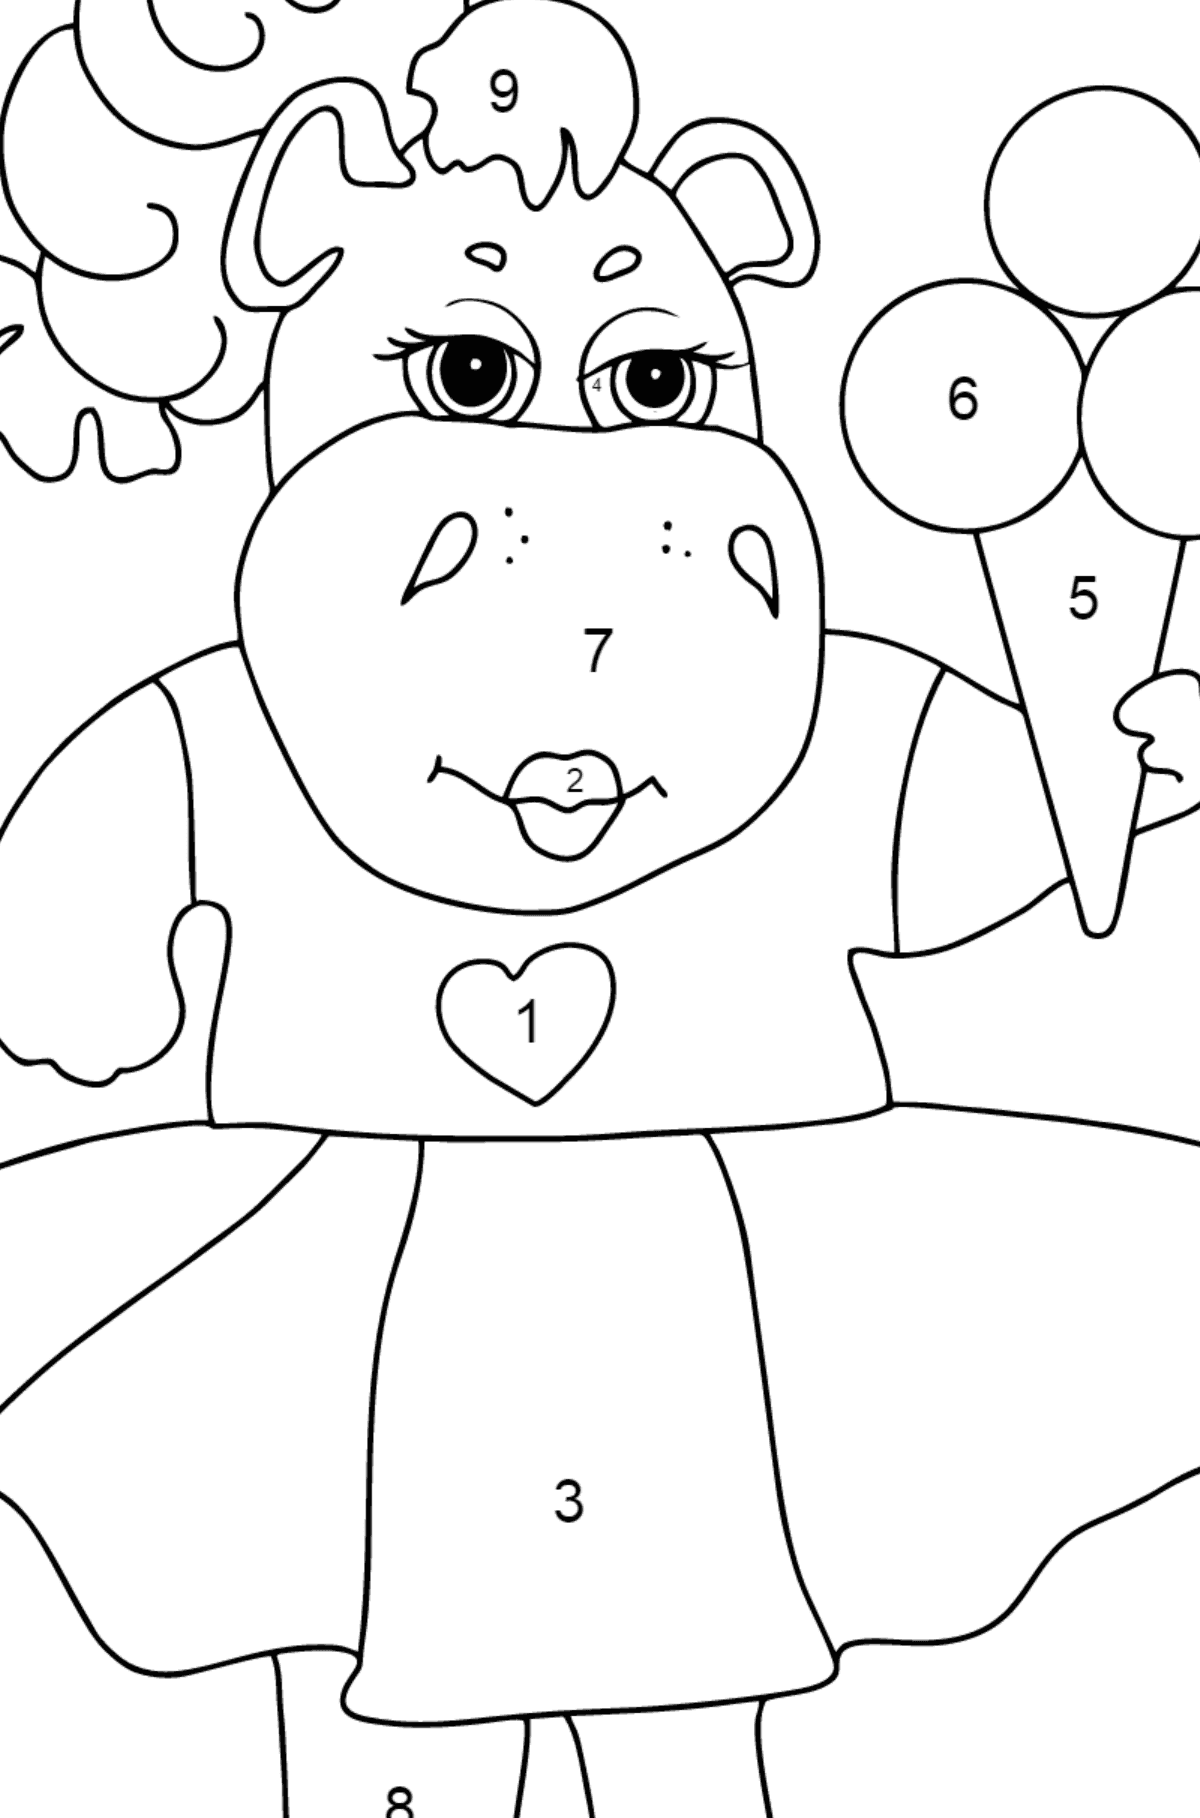 Dibujo de adorable hipopótamo (simple) para colorear - Colorear por Números para Niños